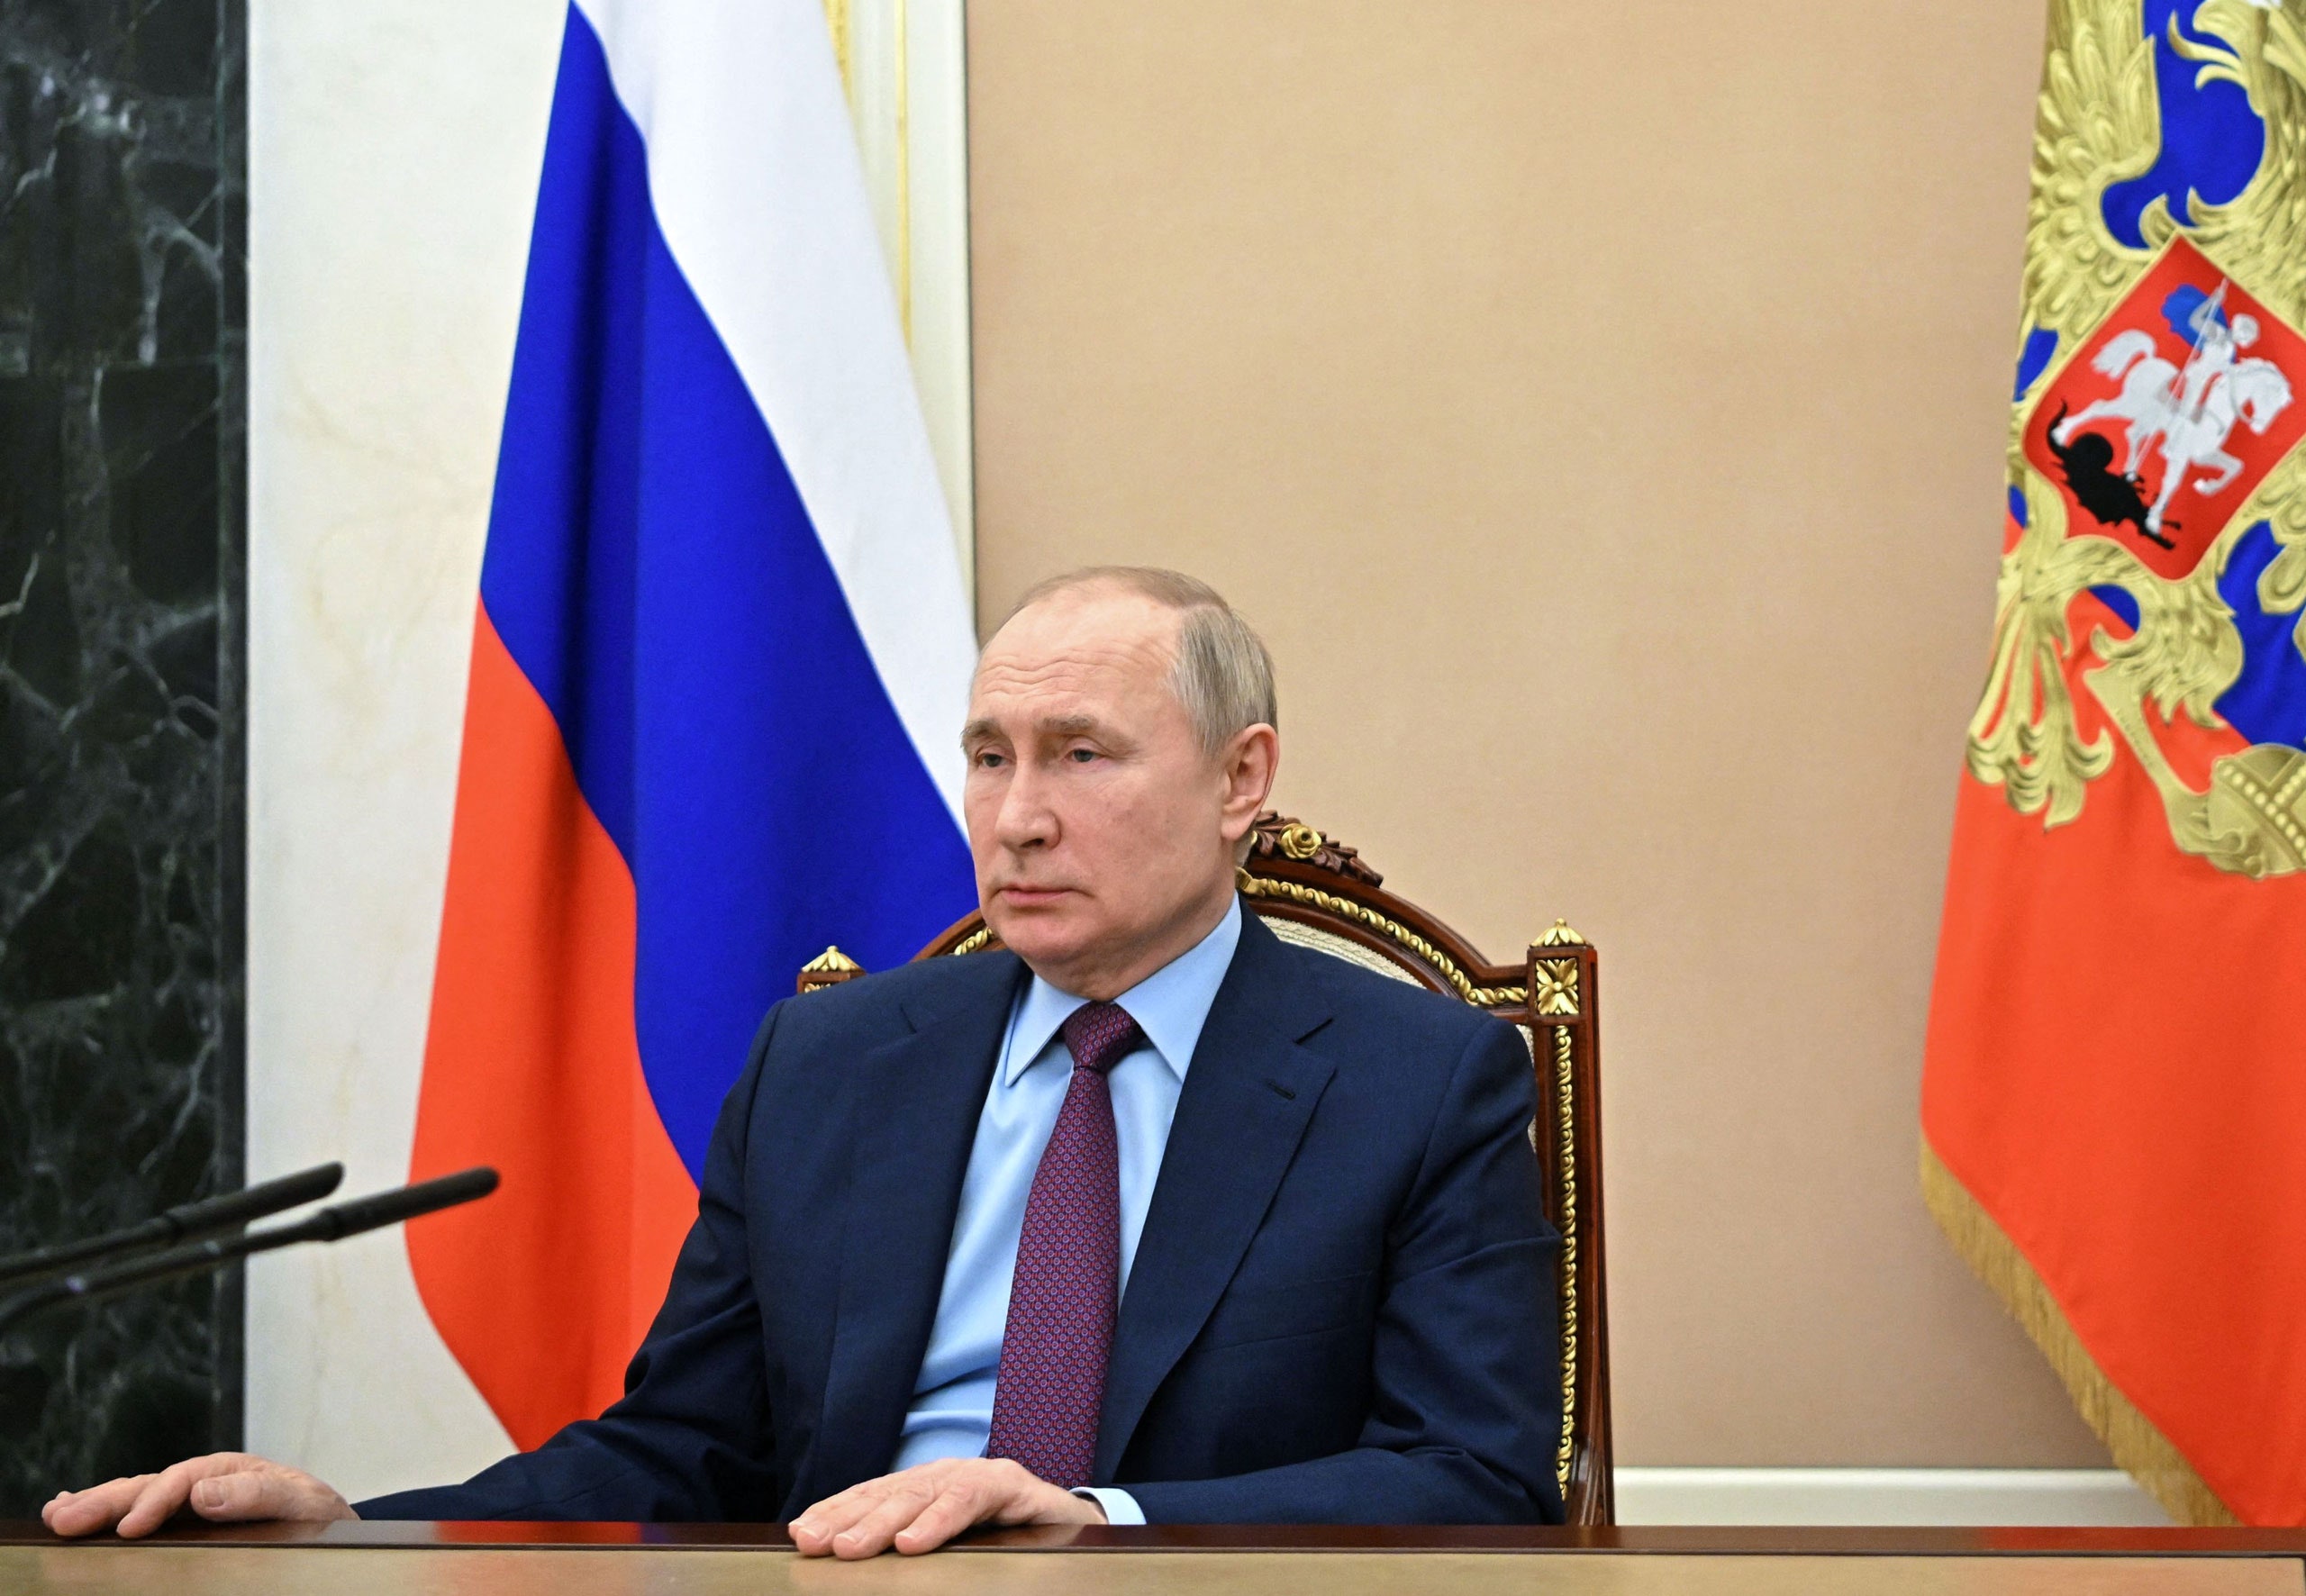 Putin: Marrëdhënia e Rusisë me Ukrainën është ndryshe nga shtetet e tjera post-sovjetike